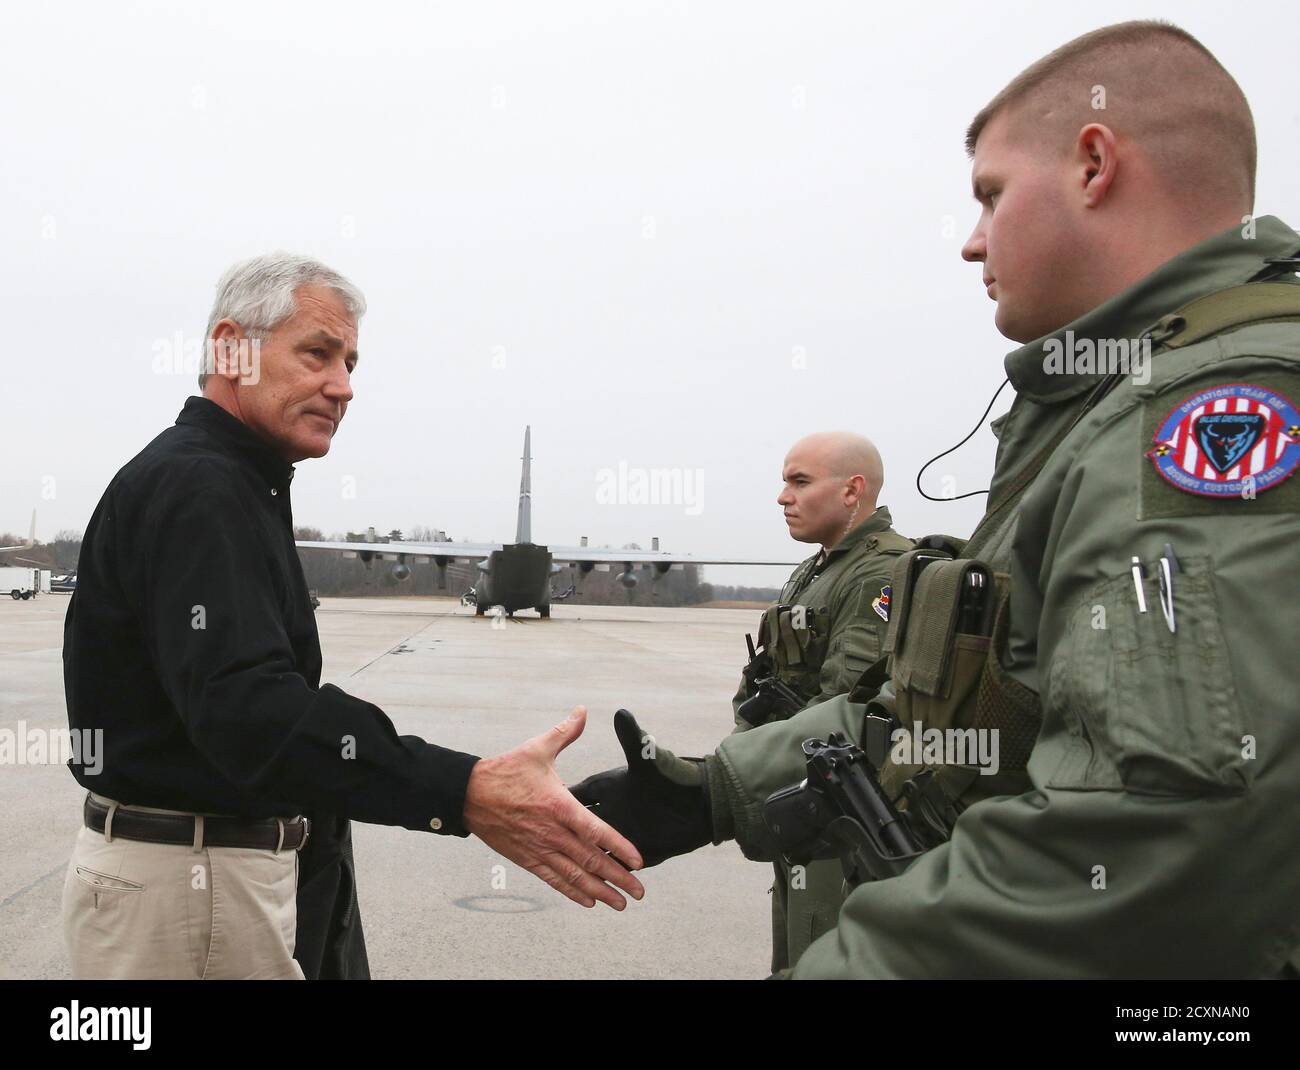 US-Verteidigungsminister Chuck Hagel (L) begrüßt zwei Mitglieder von der US Air Force vor seinem Flugzeug, Abfahrt auf einer Auslandsreise in gemeinsame Basis Andrews, Maryland am 5. Dezember 2014. REUTERS/Mark Wilson/Pool (Vereinigte Staaten - Tags: militärische) Stockfoto